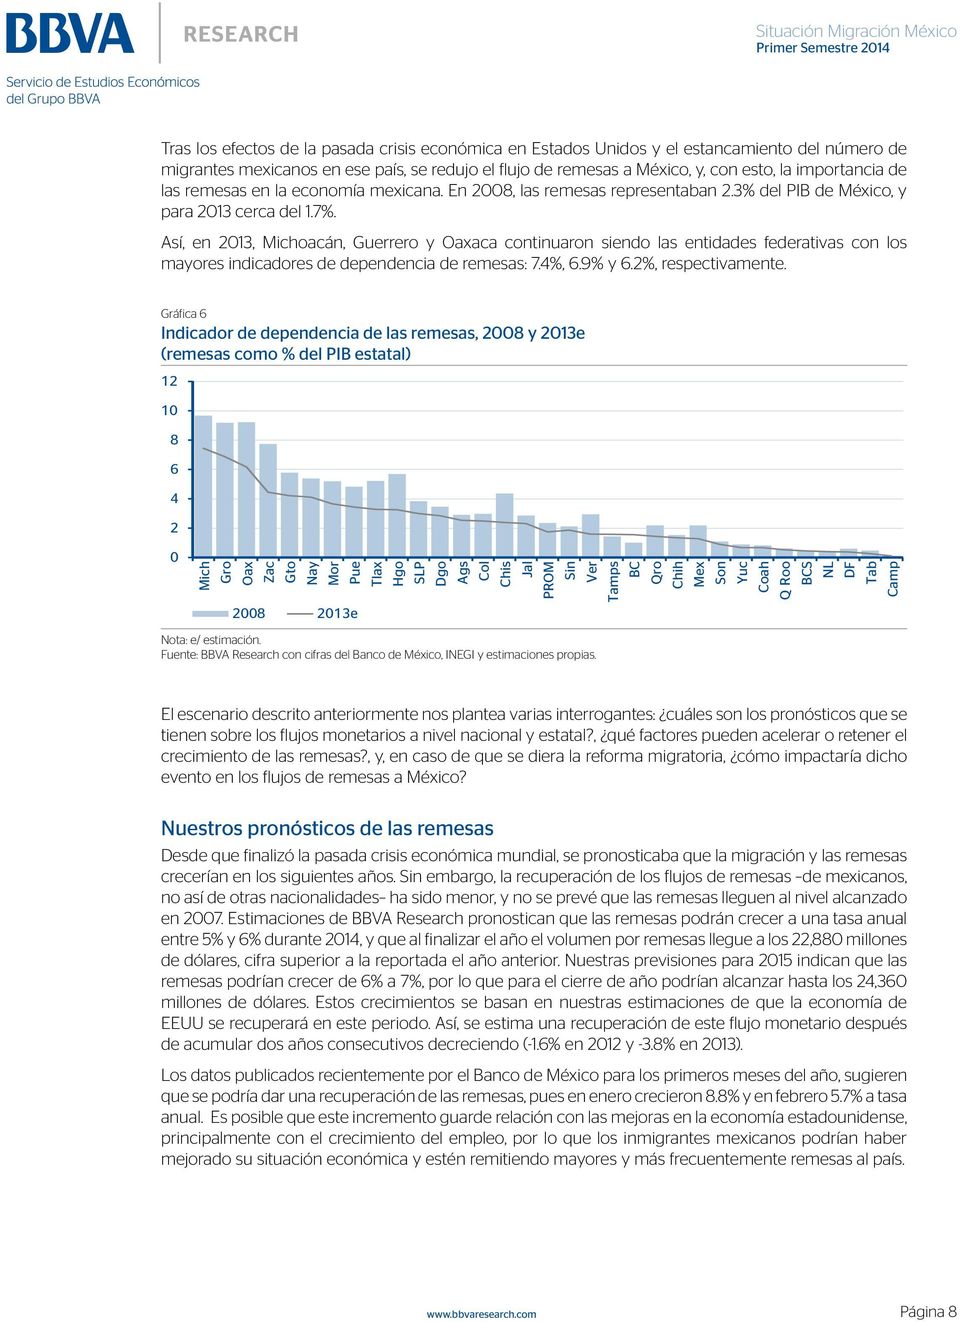 Así, en 2013, Michoacán, Guerrero y Oaxaca continuaron siendo las entidades federativas con los mayores indicadores de dependencia de remesas: 7.4%, 6.9% y 6.2%, respectivamente.